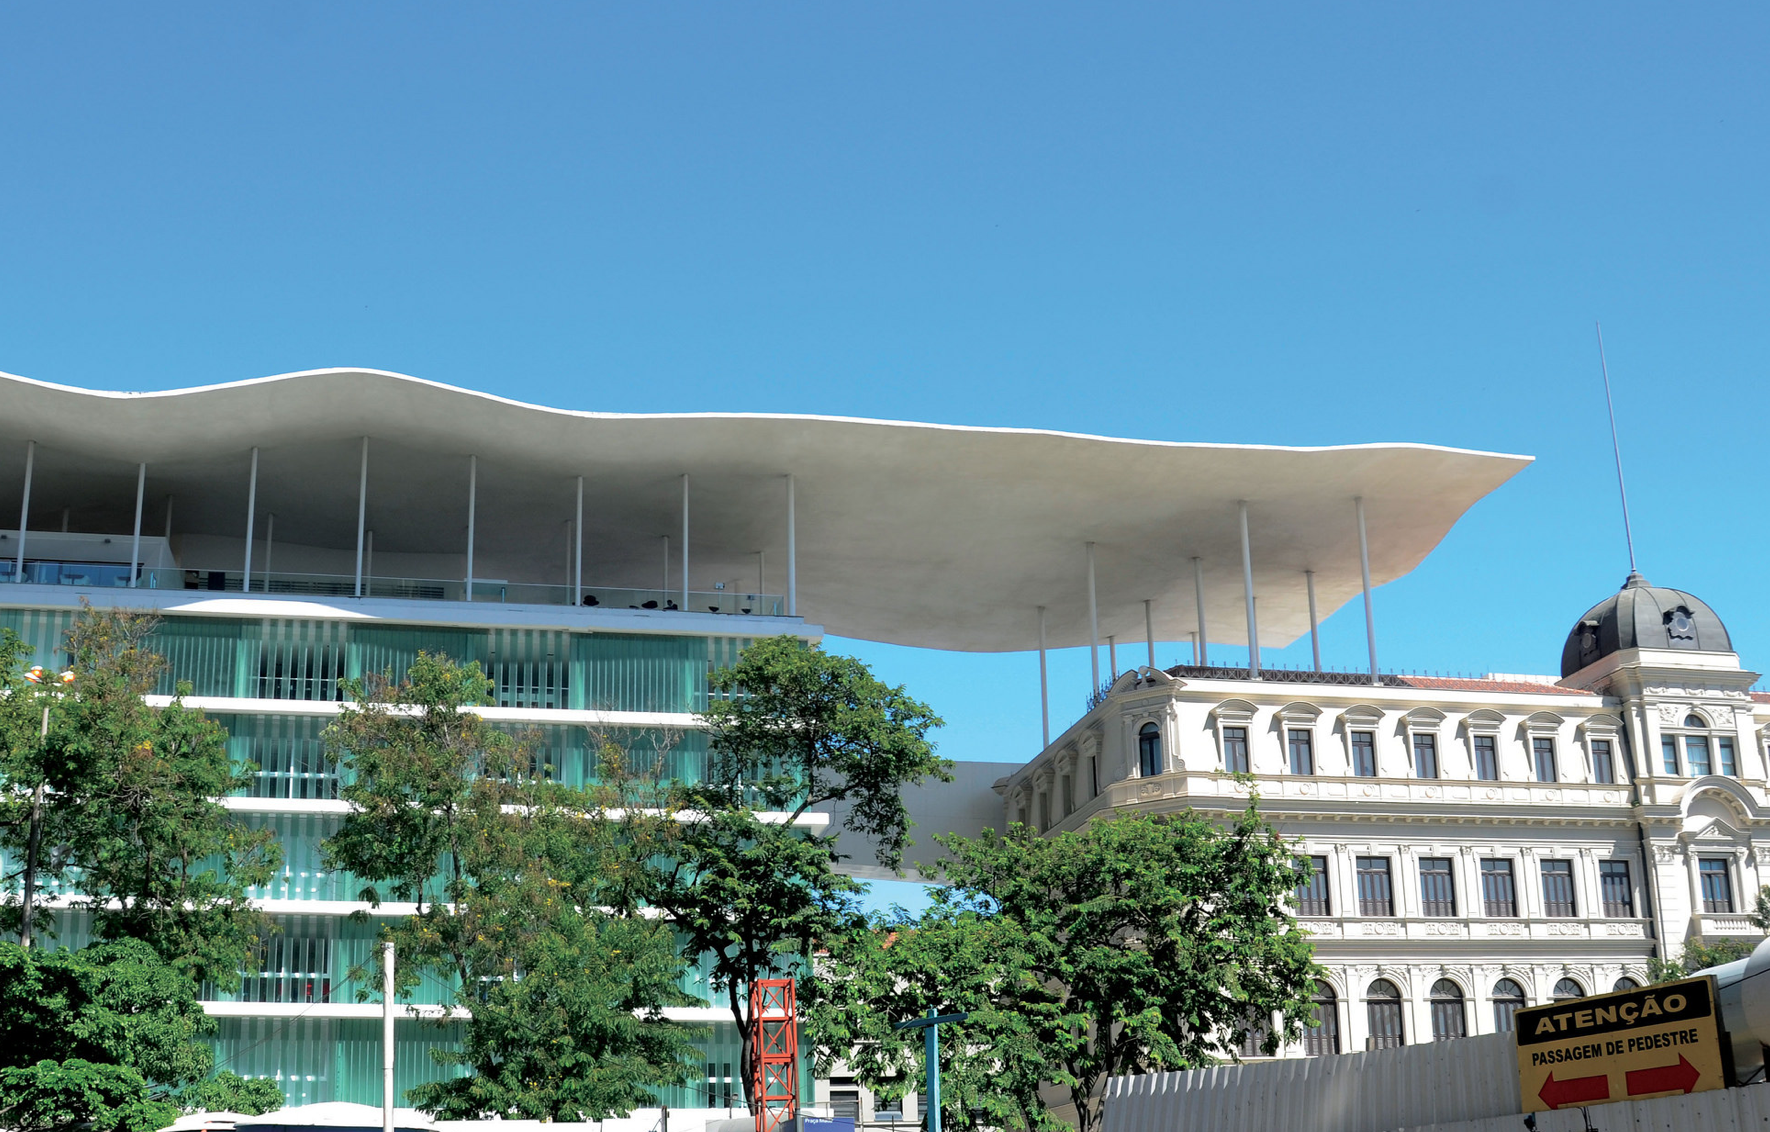 New “Passaportes” Grant Free Access to Rio de Janeiro Museums